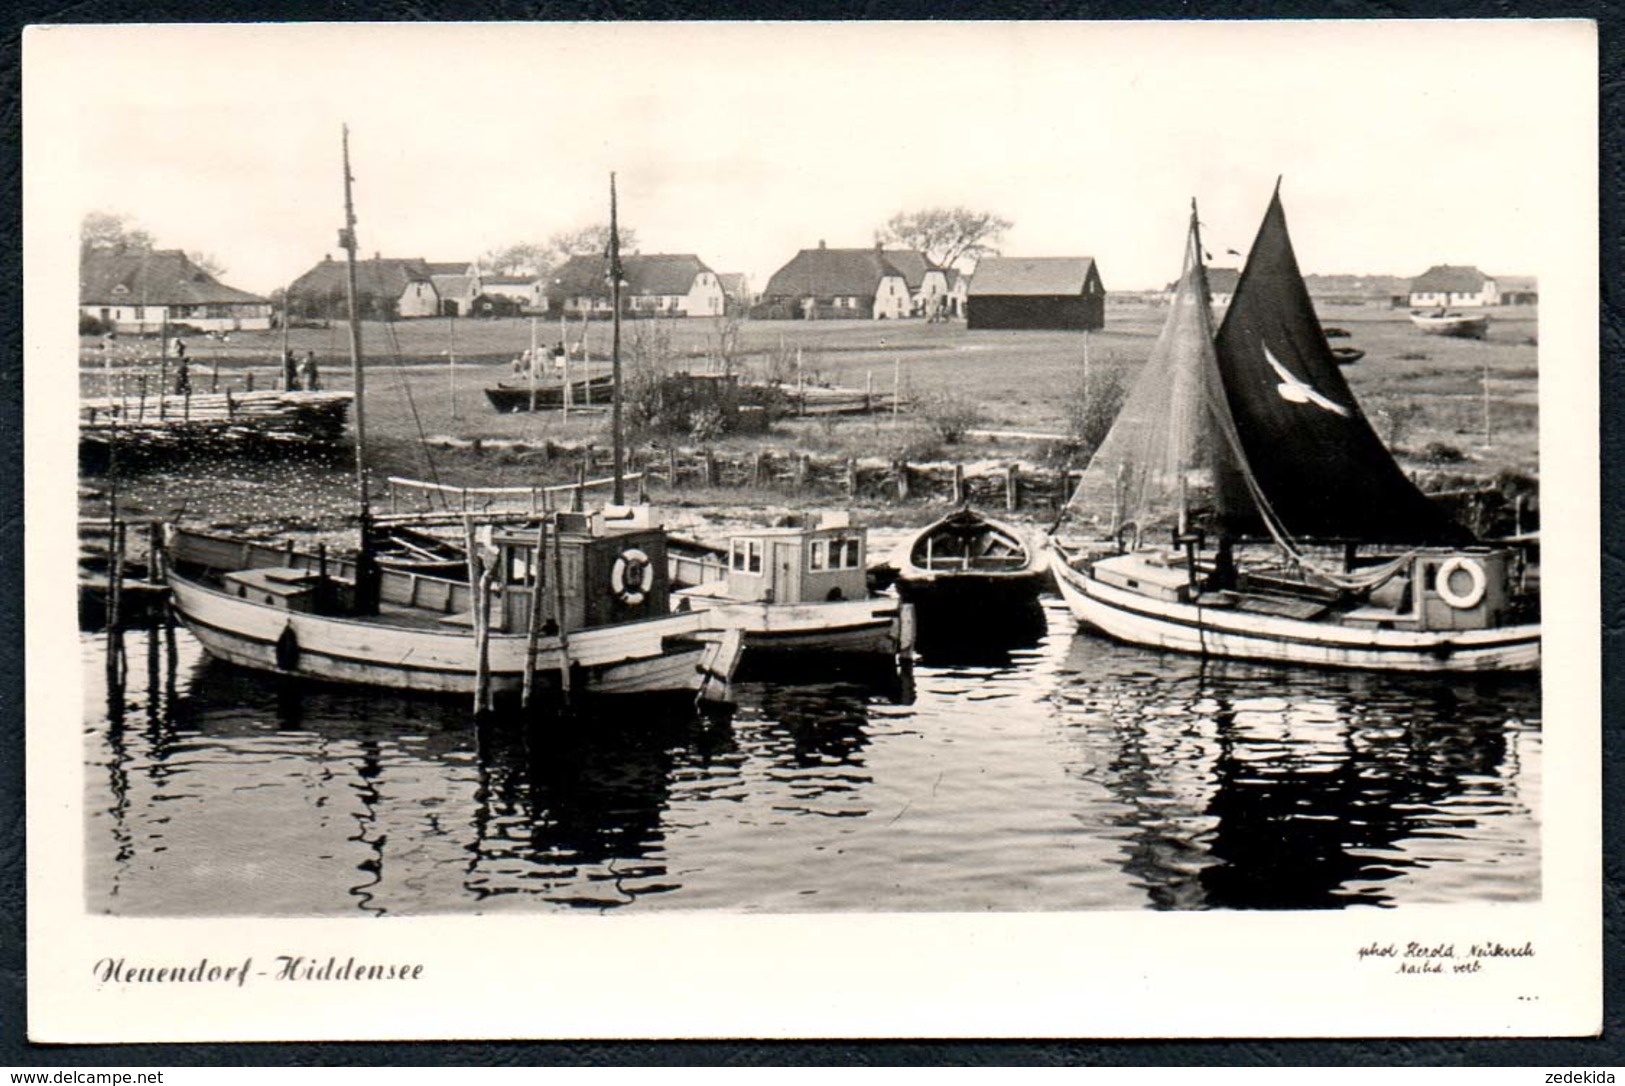 B1374 - Neuendorf Hiddensee - Segelboote Kutter Fischkutter Hafen - Herold Neukirch - Hiddensee